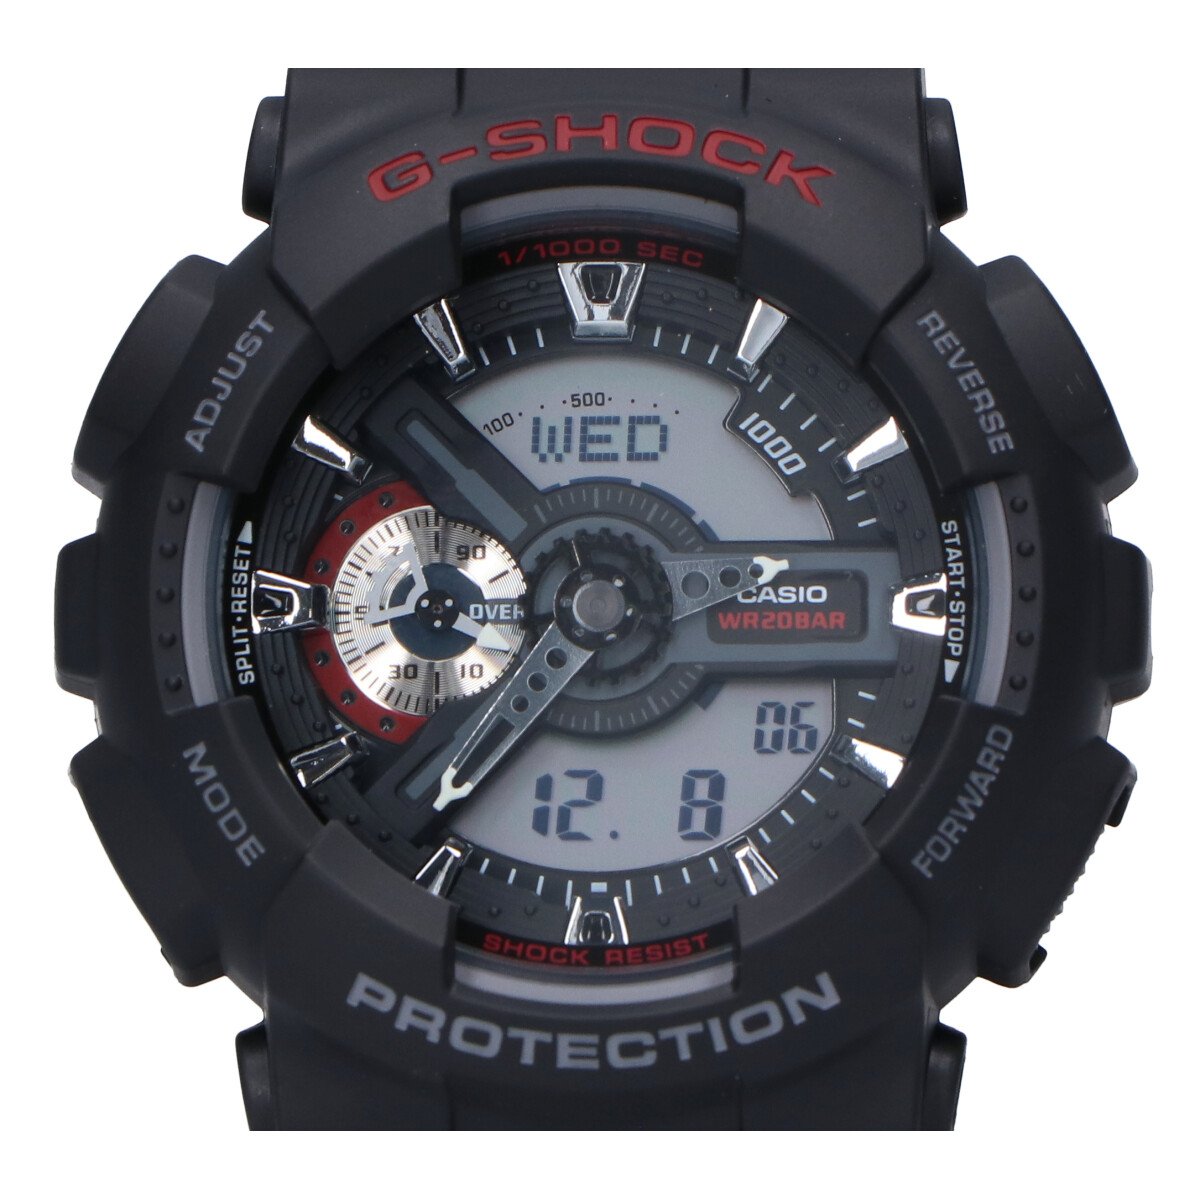 ジーショックの男梅懸賞第2弾2016年キャンペーン GA-110 男梅コラボレーション アナデジ腕時計 ブラック ※非売品の買取実績です。